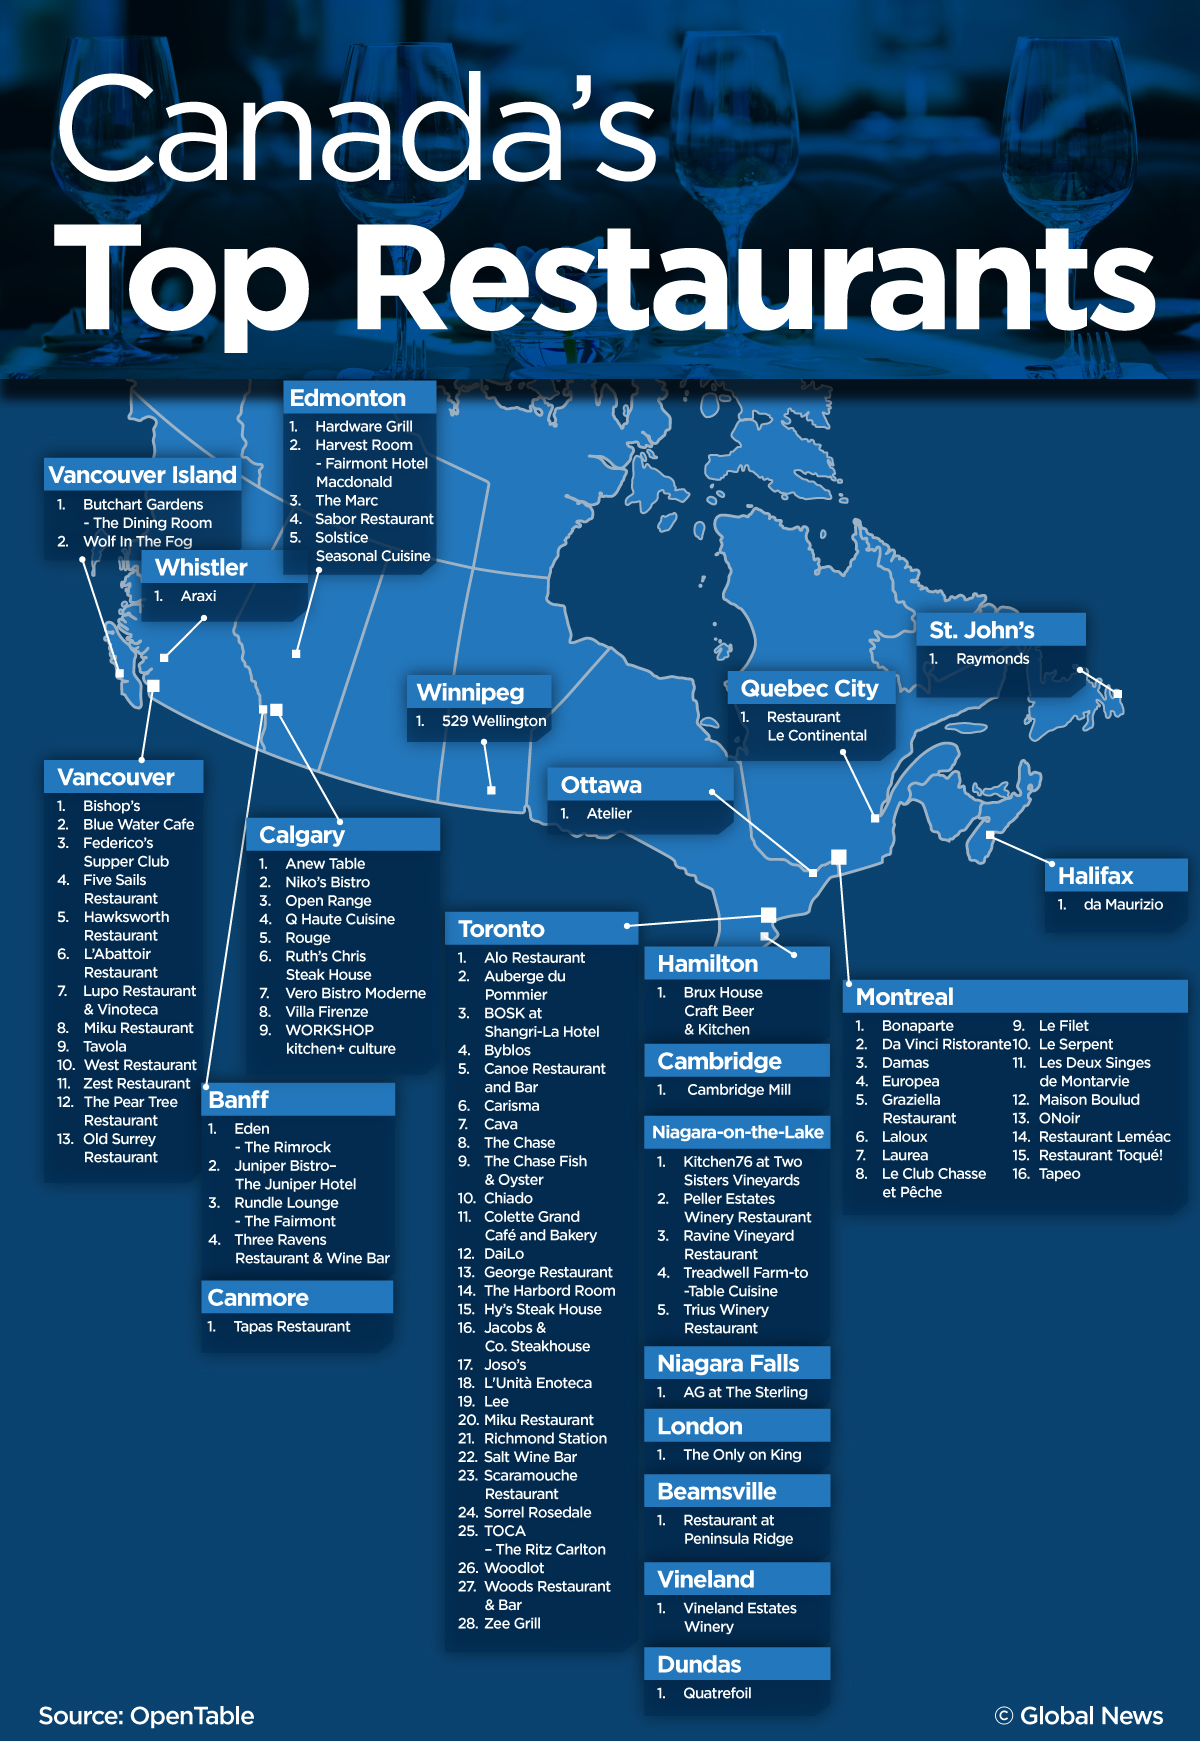 OpenTable Restaurant Reviews Reveal Top 100 Best Restaurants in America